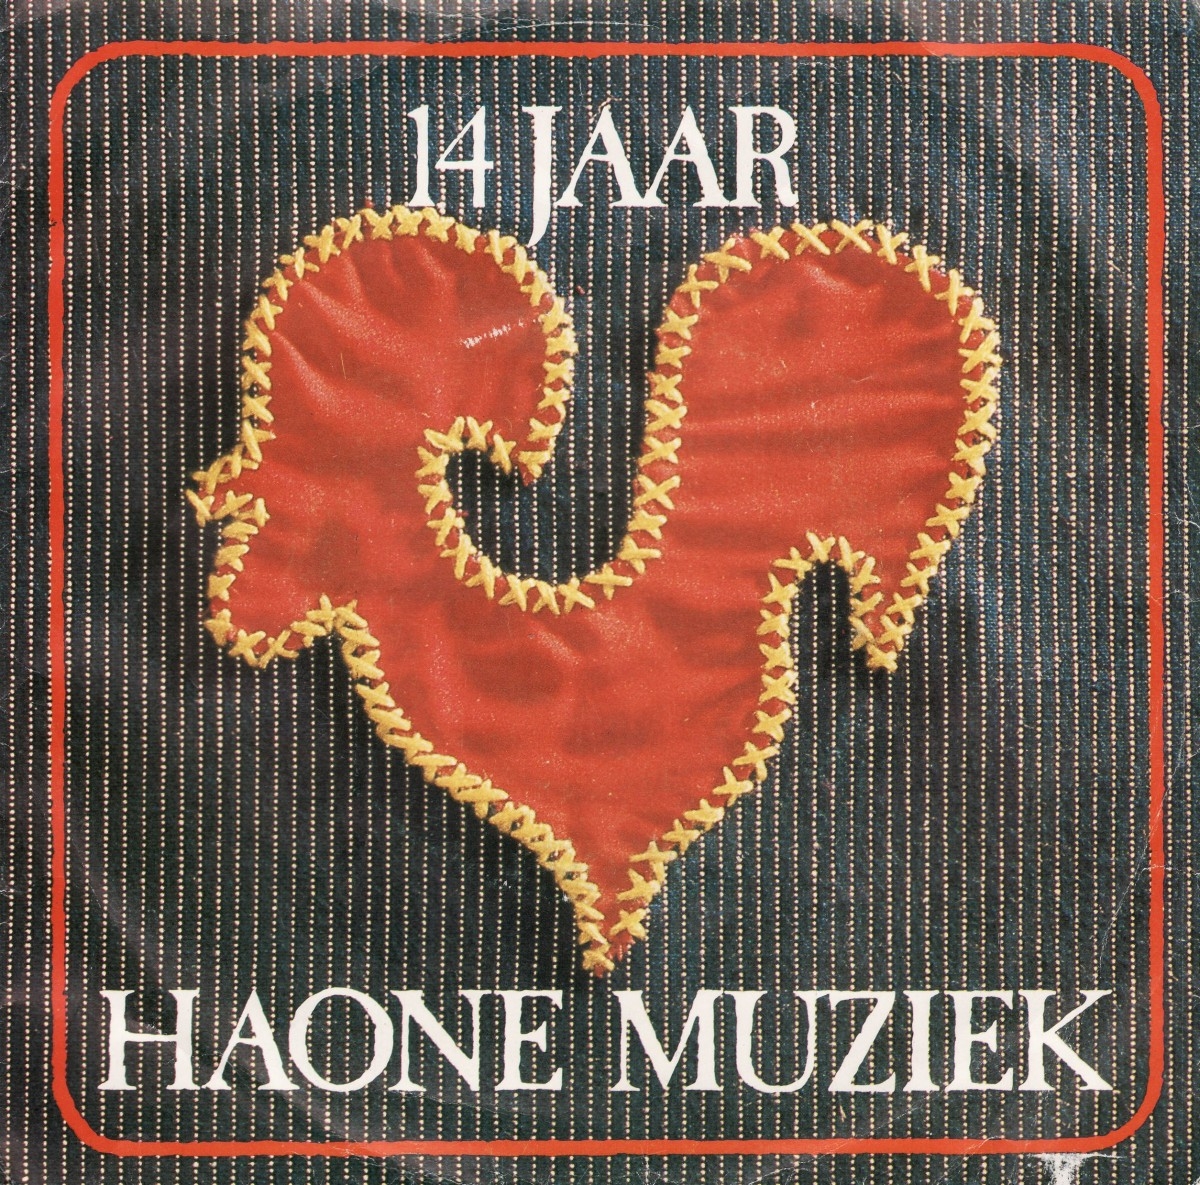 1979-11-17 Haone-muziek op de plaat